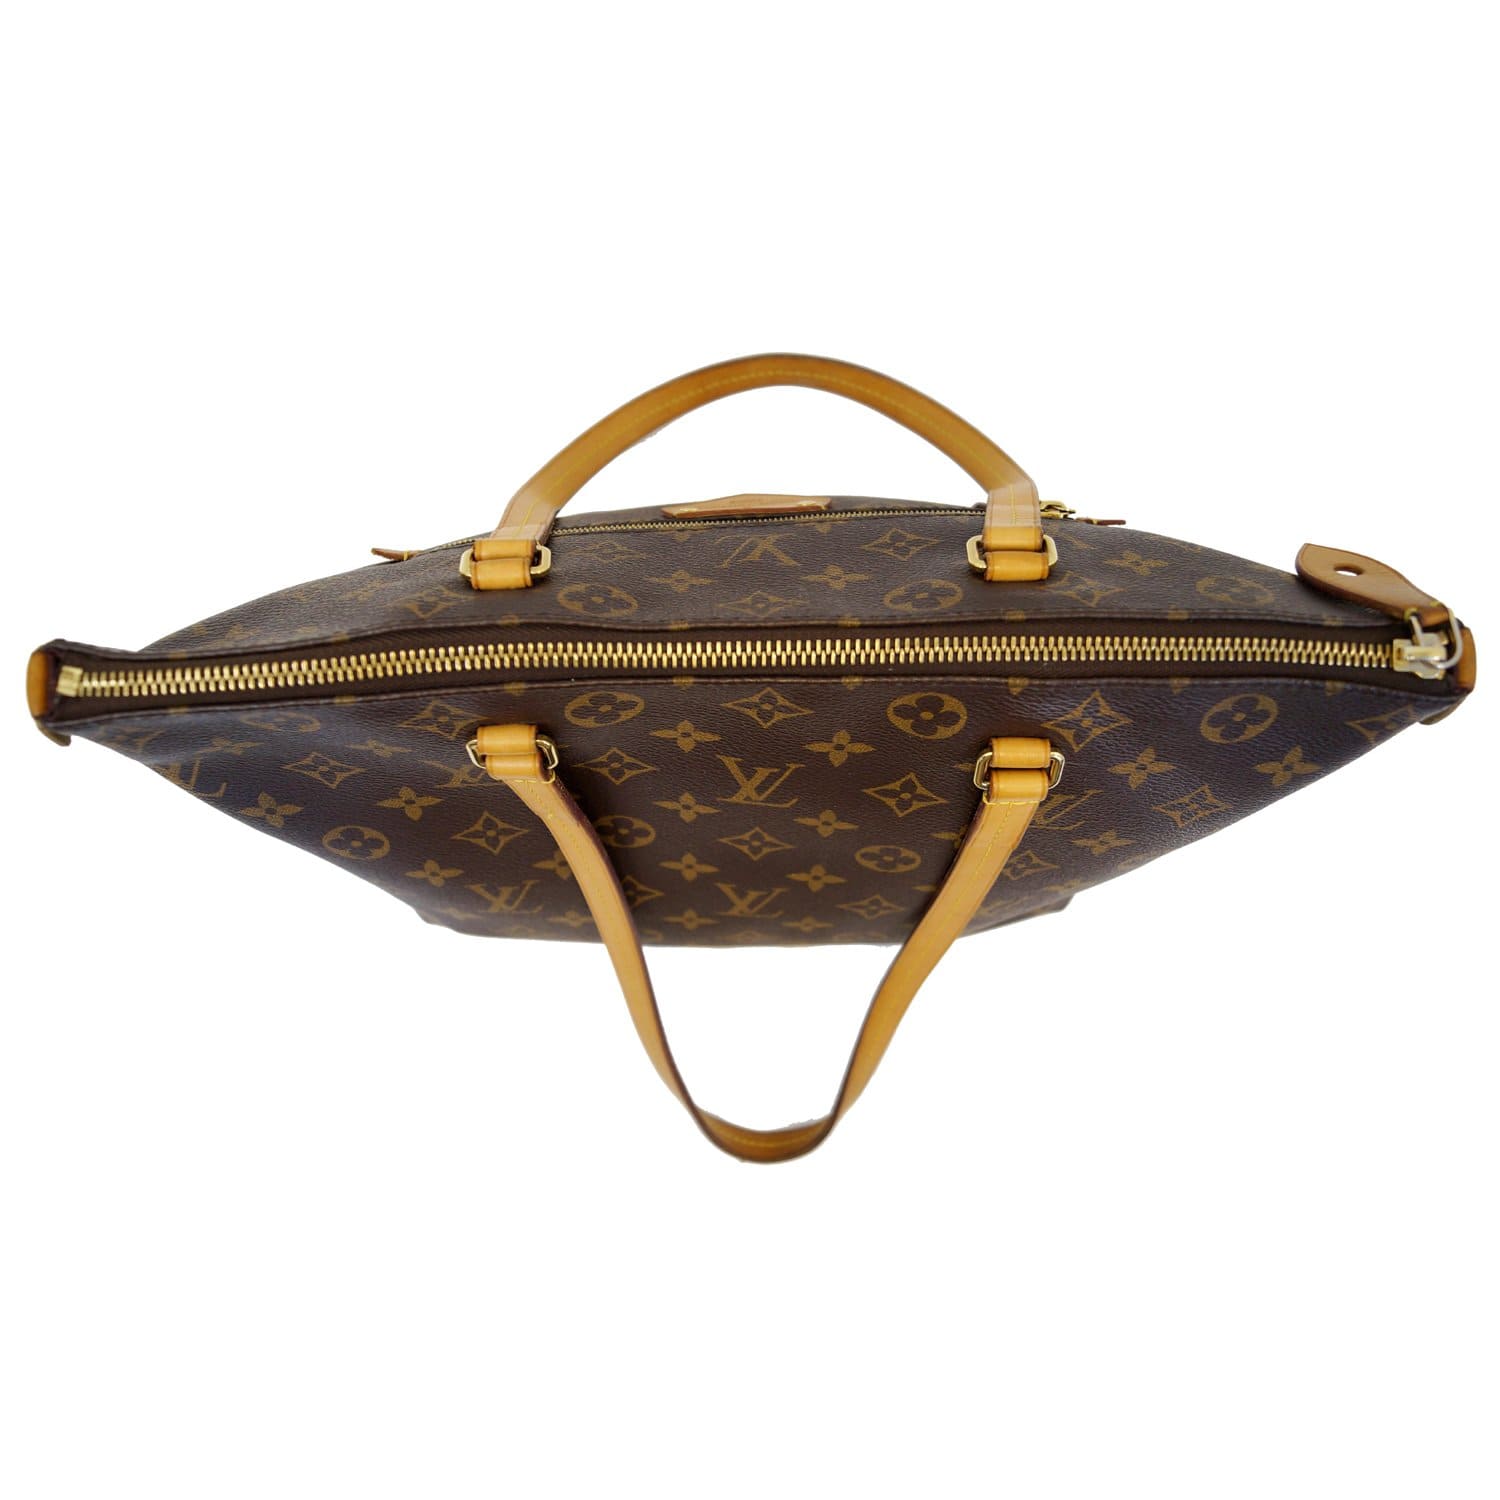 Louis Vuitton - Monogram Canvas Lena MM Tote - Brown Shoulder Bag